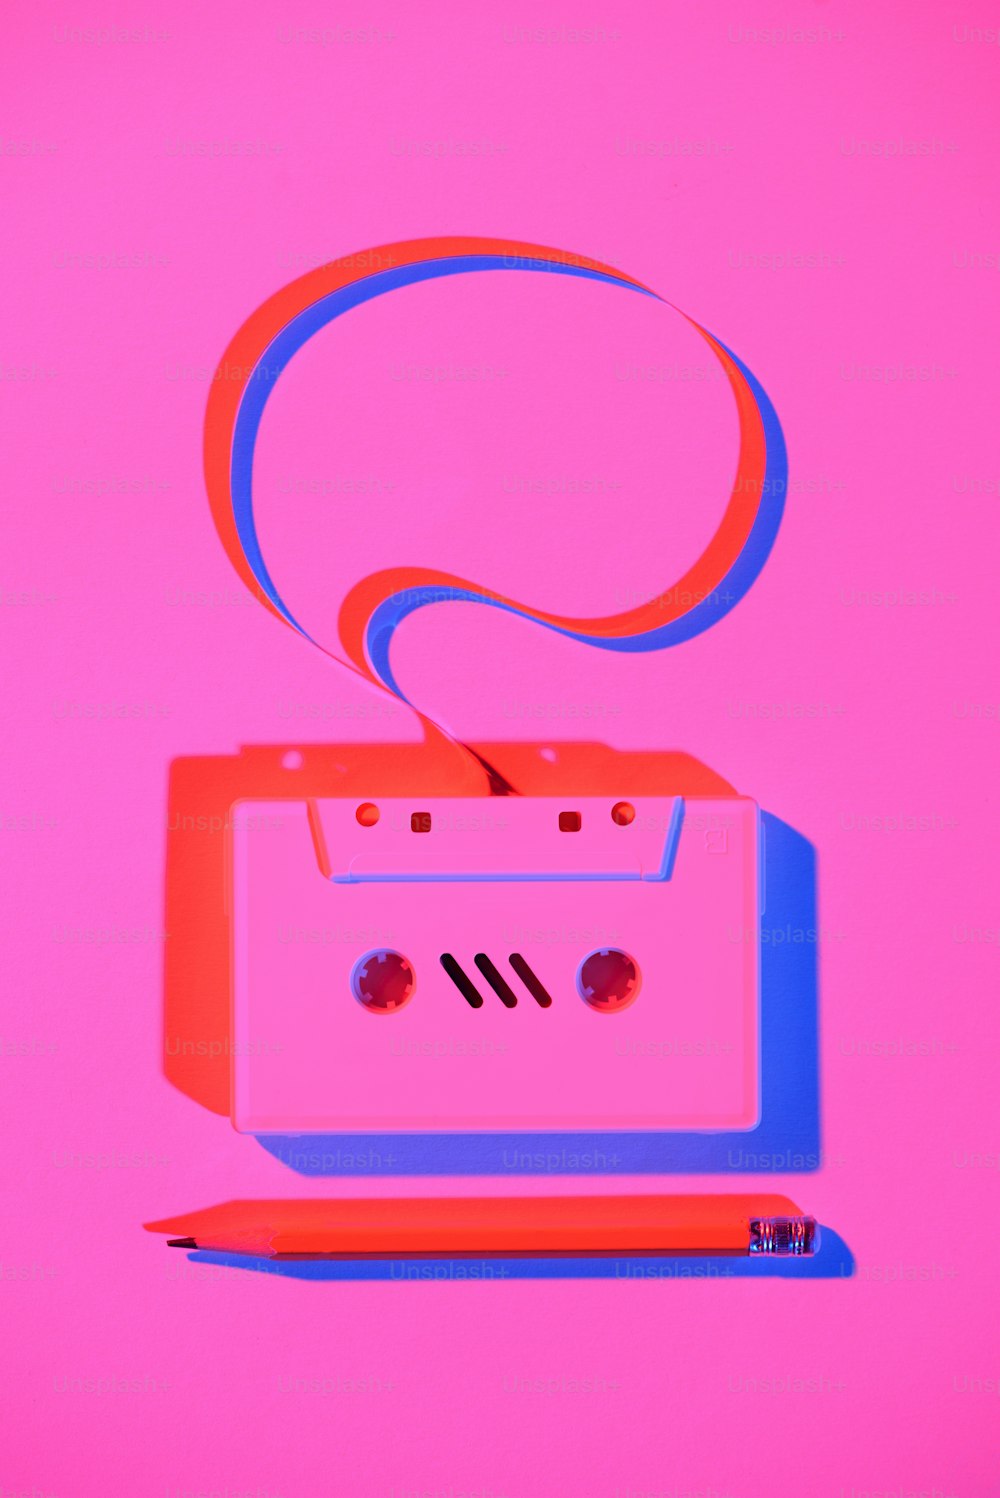 Image rose tonique d’un crayon et d’une cassette audio rétro avec bulle